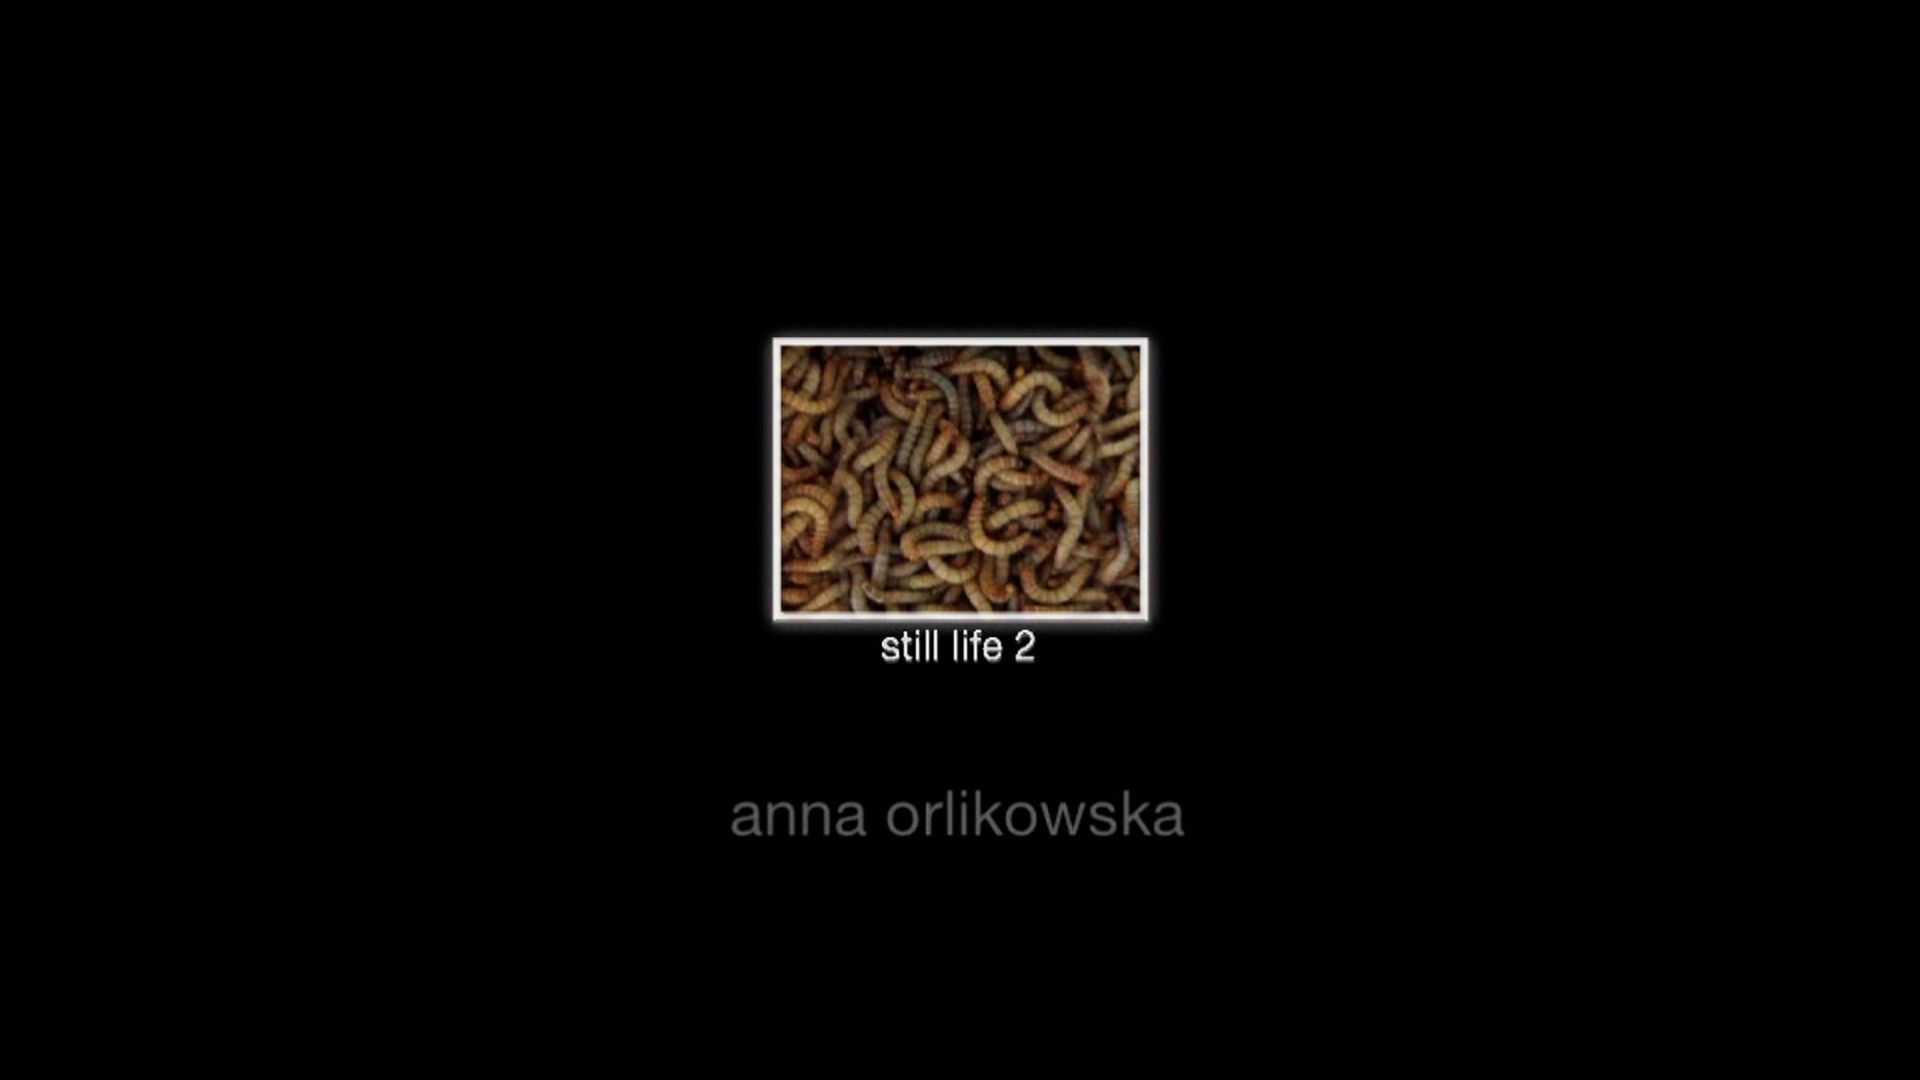 ANNA ORLIKOWSKA ANNA ORLIKOWSKA

(1979)

Still life 04 - wormsfilm II

DVD video&hellip;